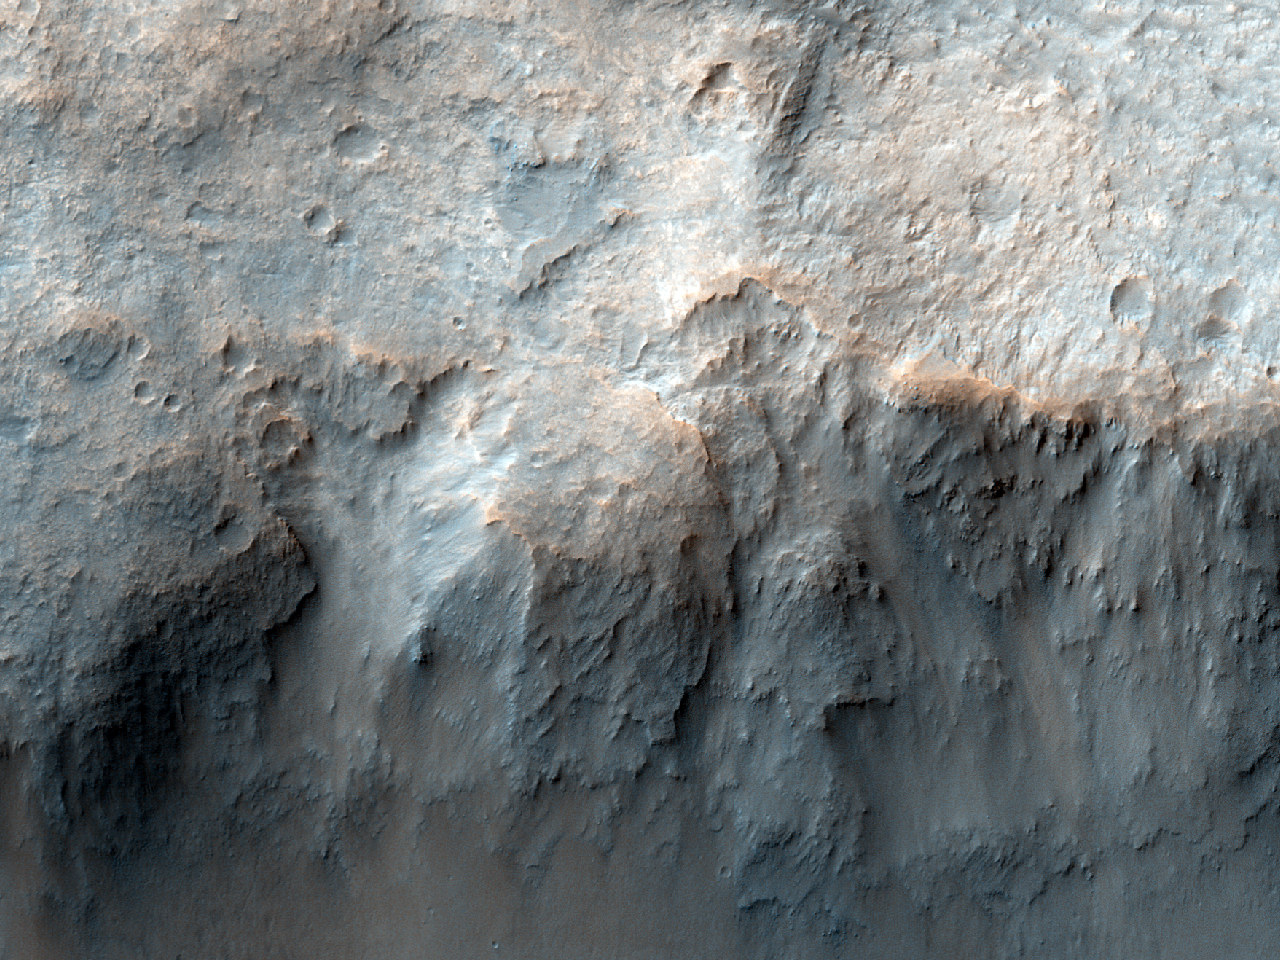 Çarpma kraterinde ortaya çıkmış ana kayaç katmanları